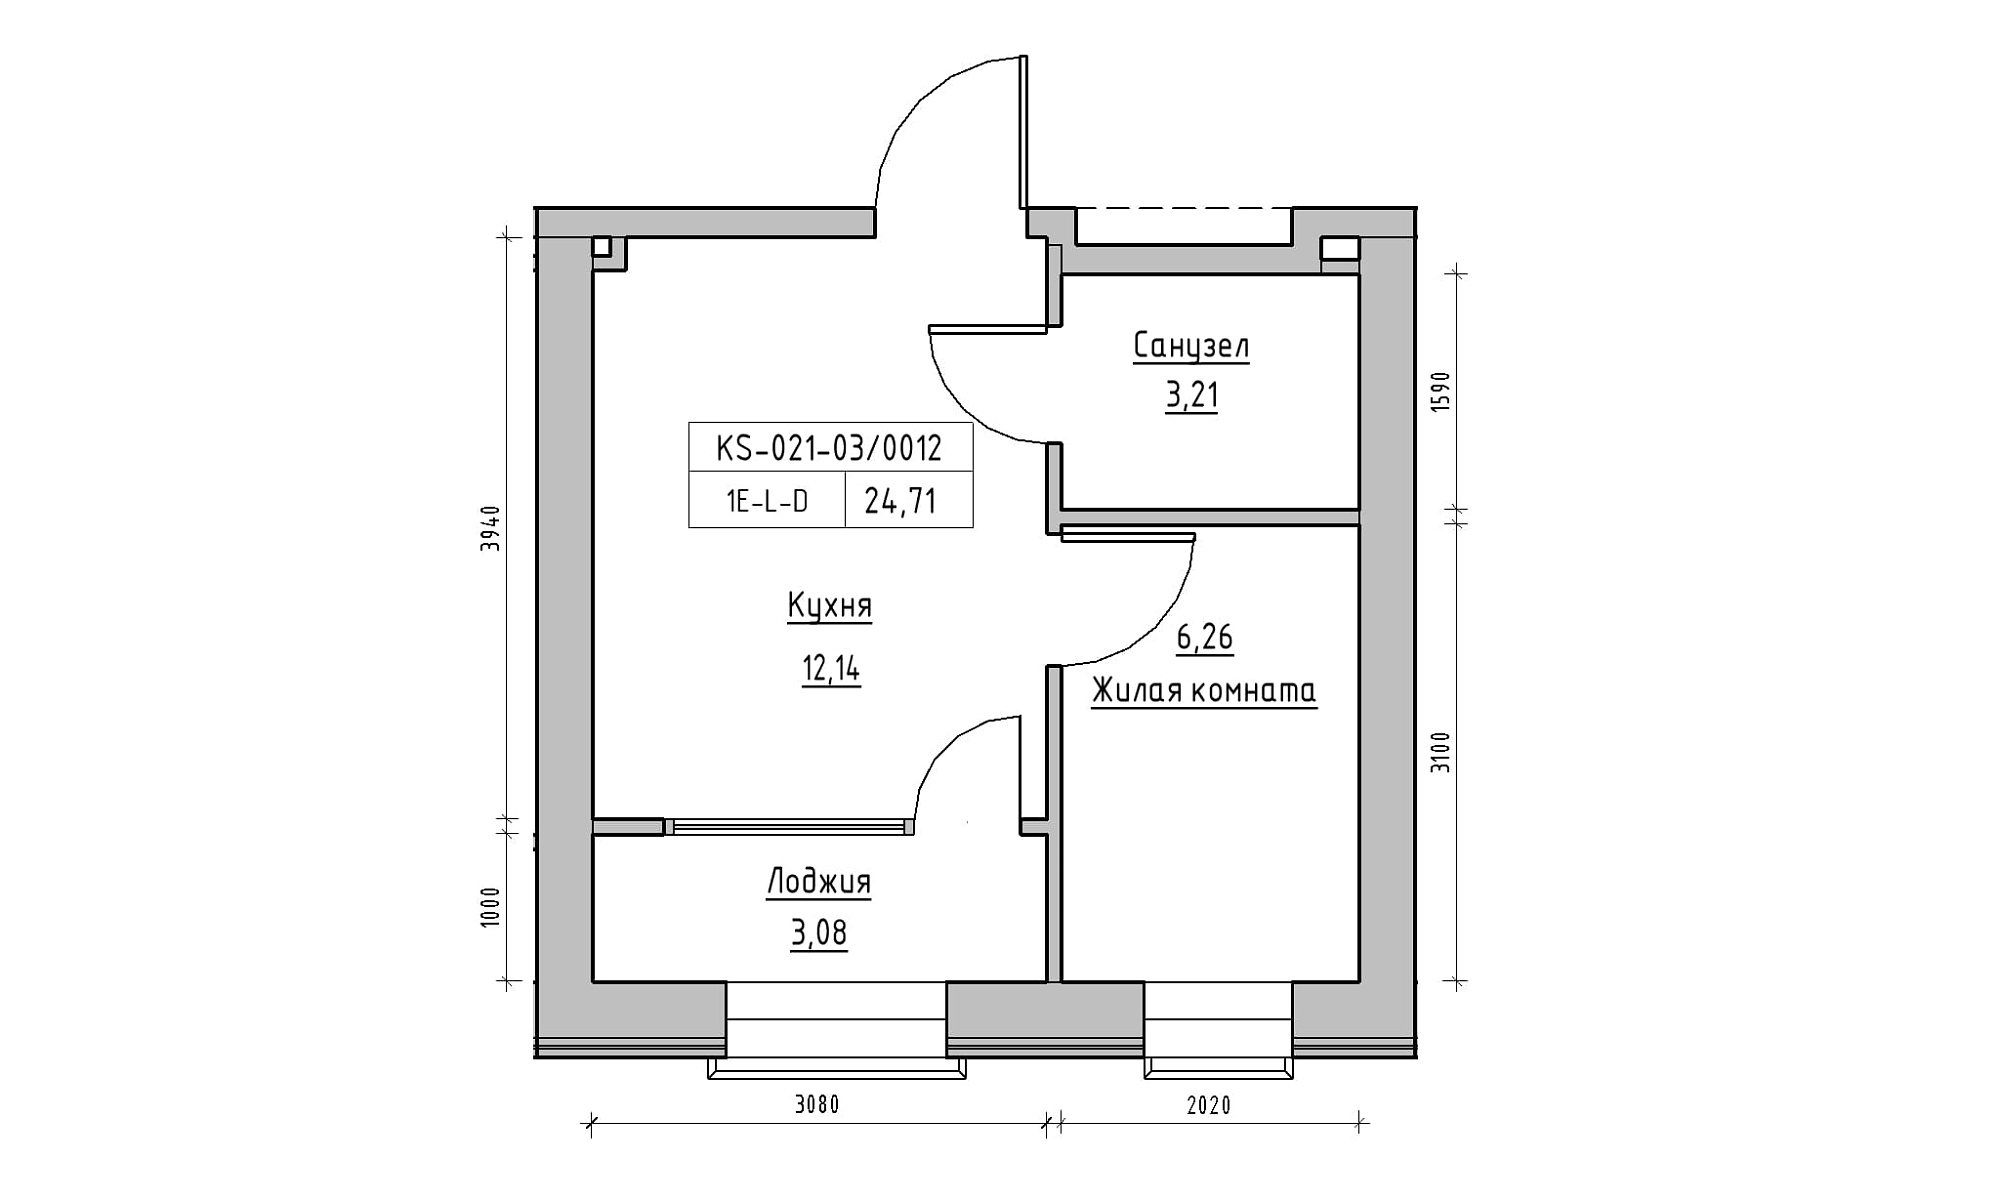 Планування 1-к квартира площею 24.71м2, KS-021-03/0012.